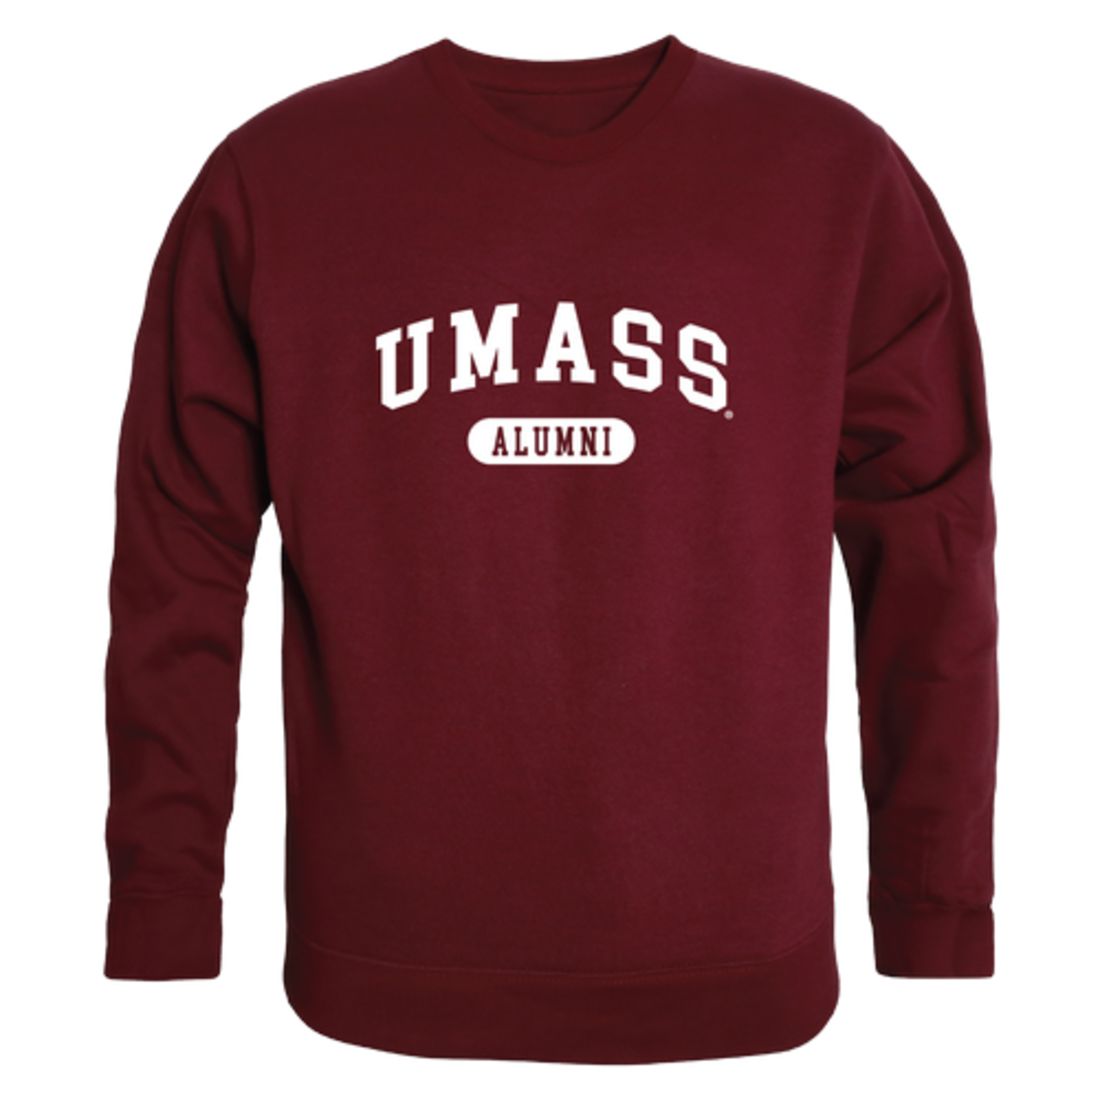 UMASS University of Massachusetts Amherst Minuteman Alumni Fleece Crewneck Pullover Sweatshirt Heather Gray-Campus-Wardrobe